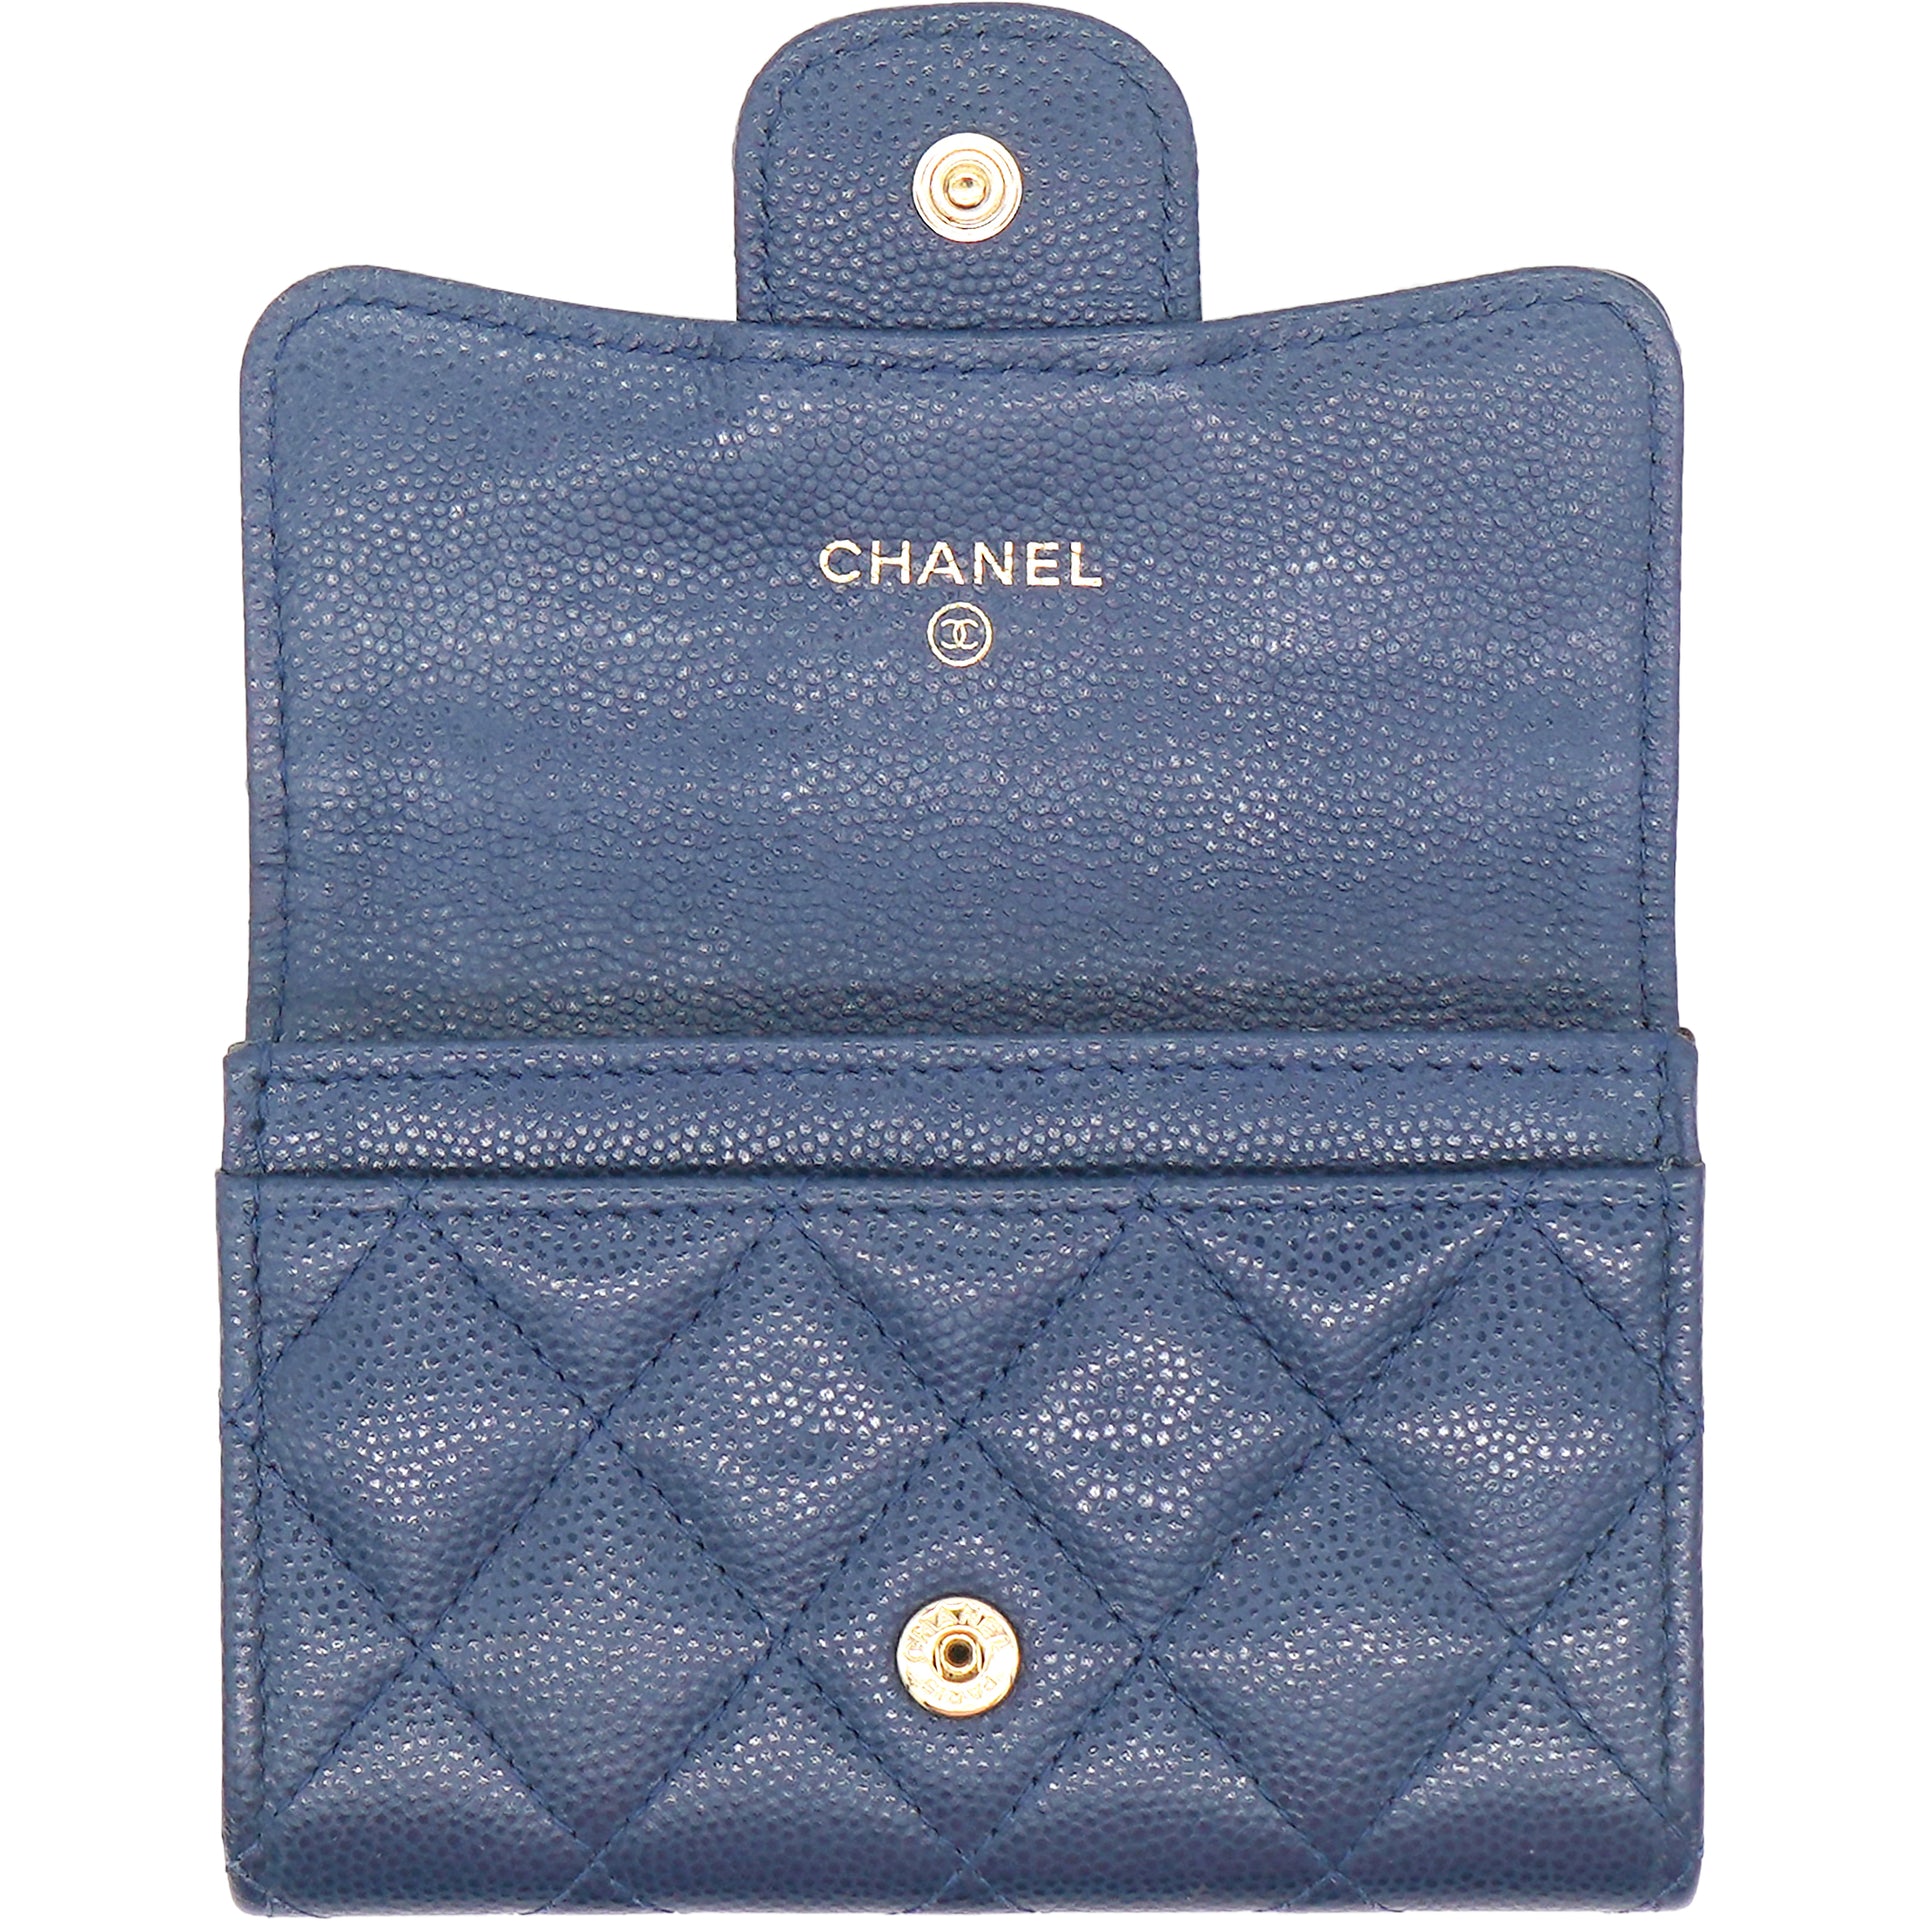 Classic small flap wallet - Lambskin, black — Fashion